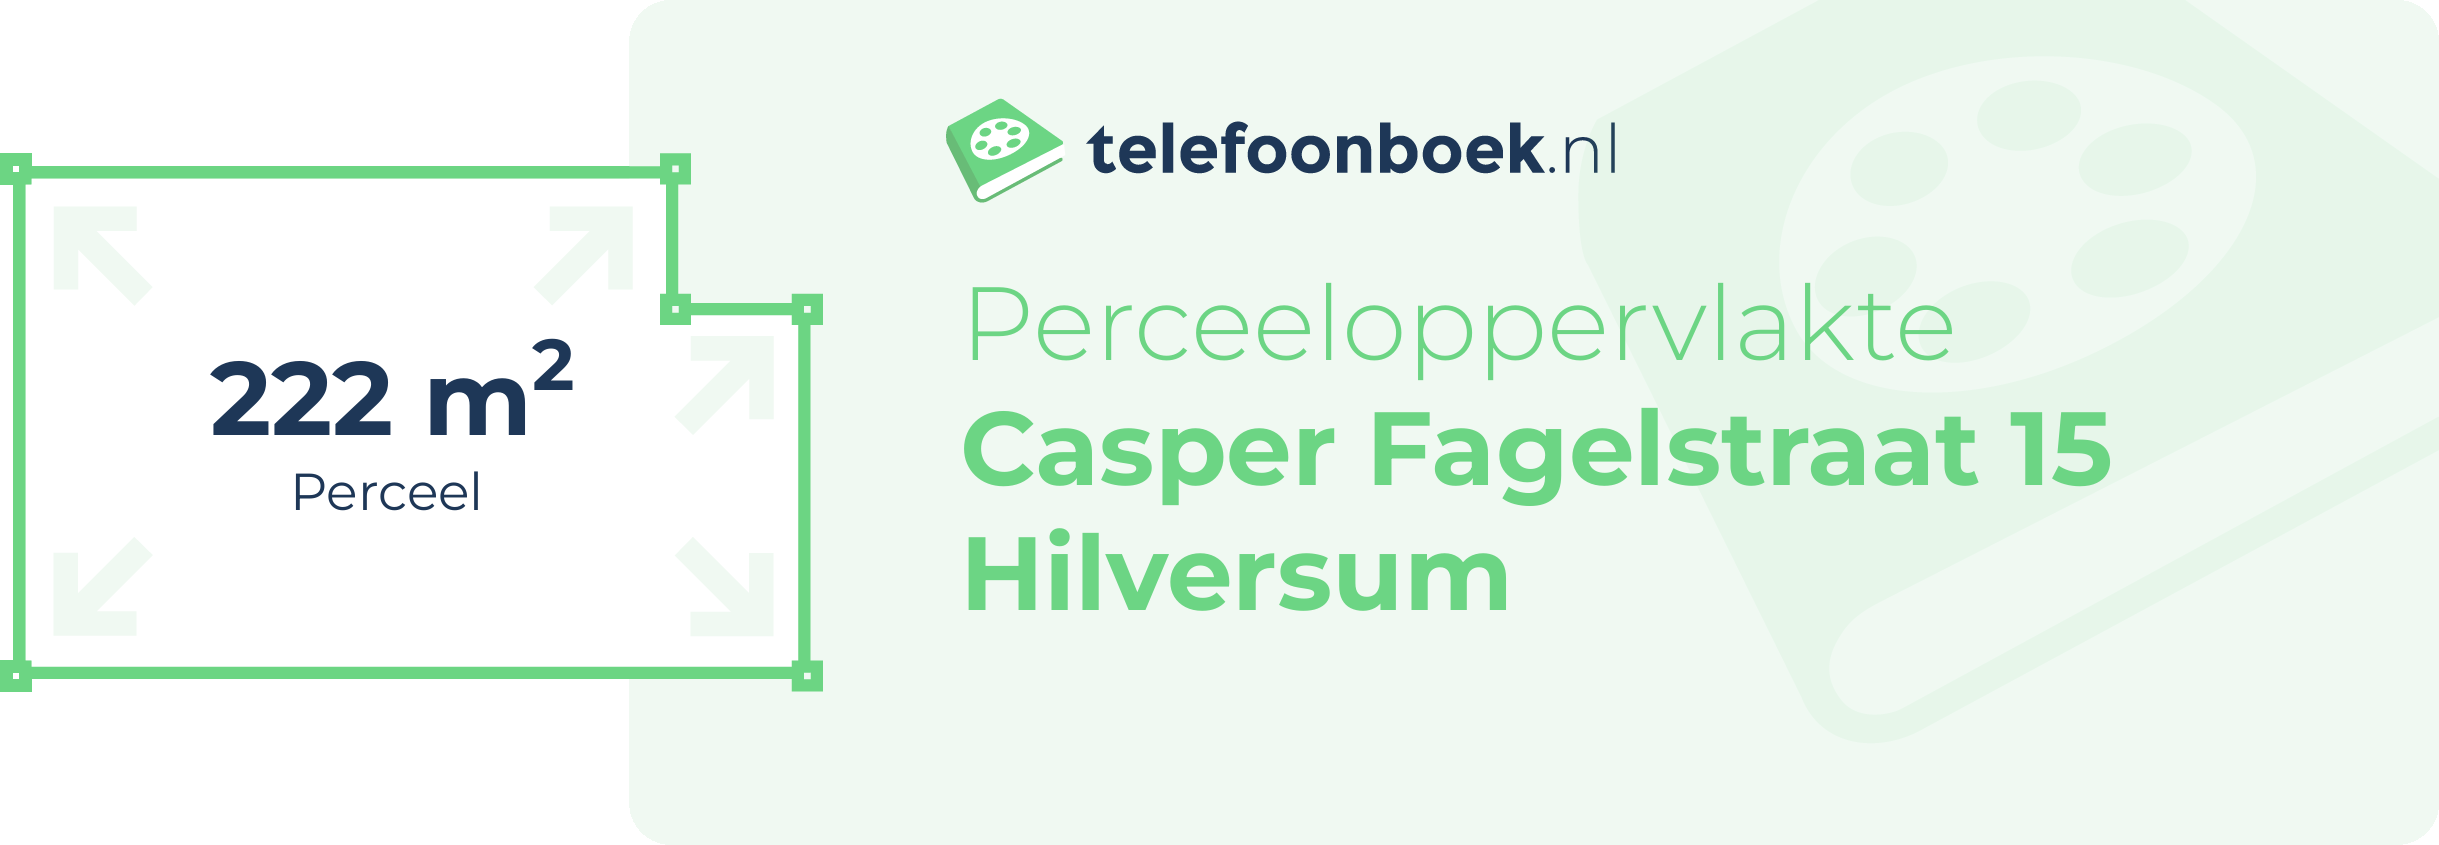 Perceeloppervlakte Casper Fagelstraat 15 Hilversum